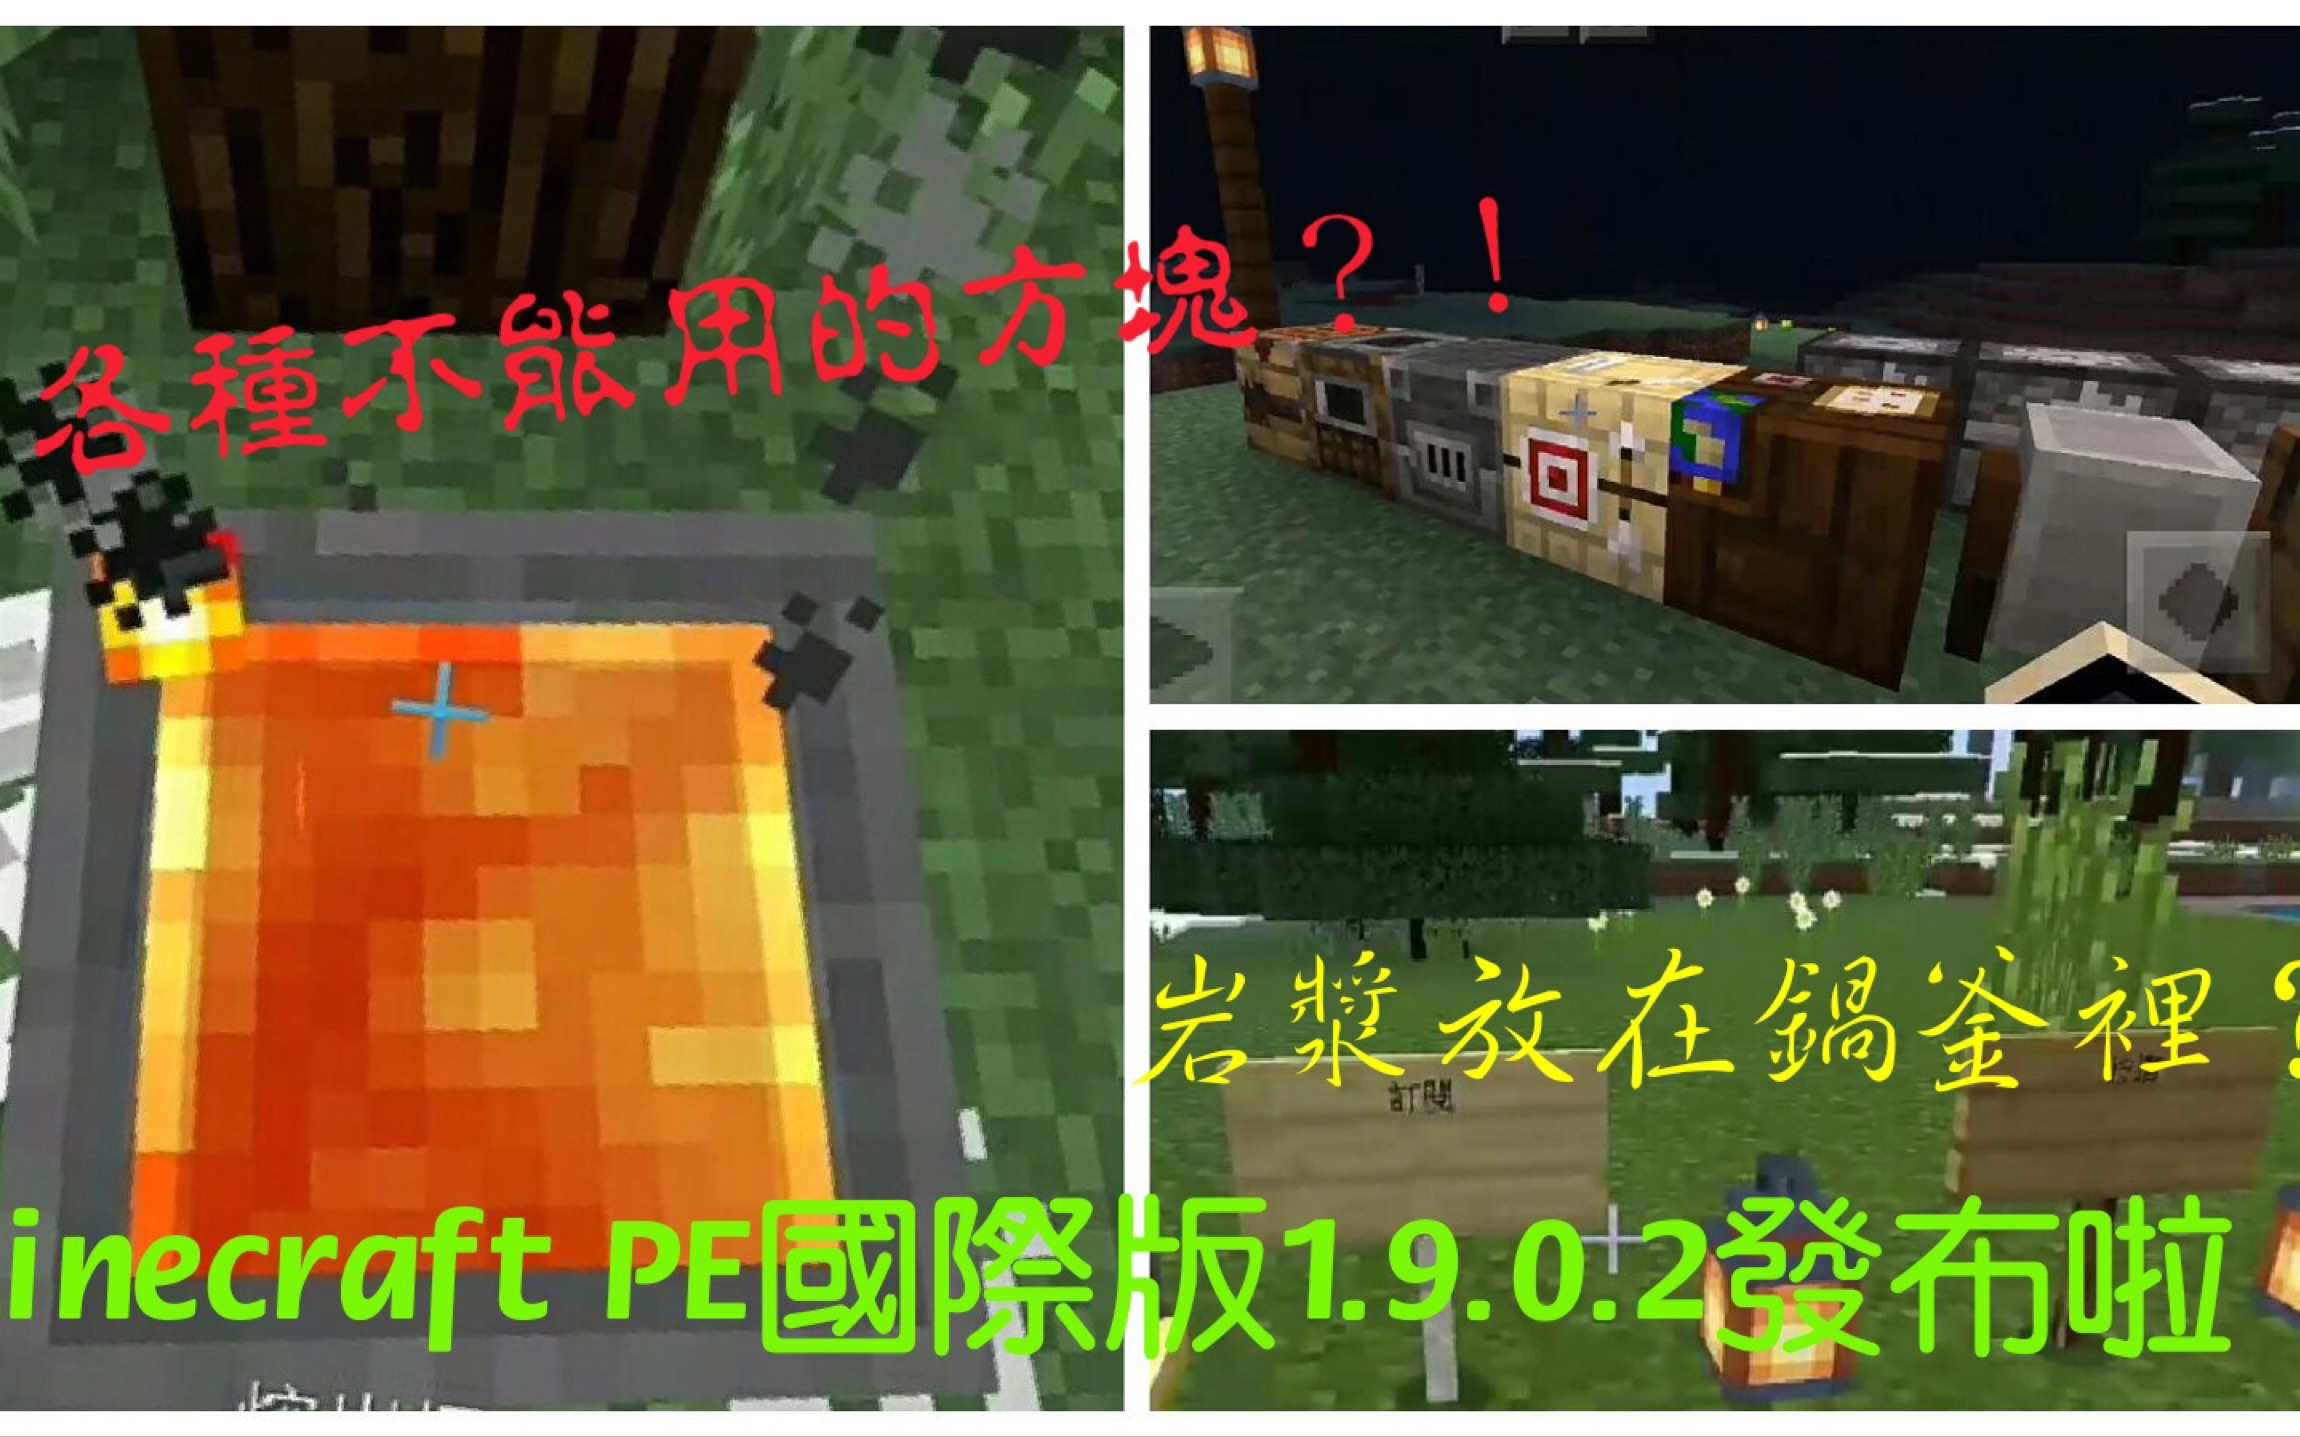 夜空钻石 Minecraft Pe国际版1 9 0 2发布 各种不能用的方块 岩浆倒锅釜 哔哩哔哩 つロ干杯 Bilibili